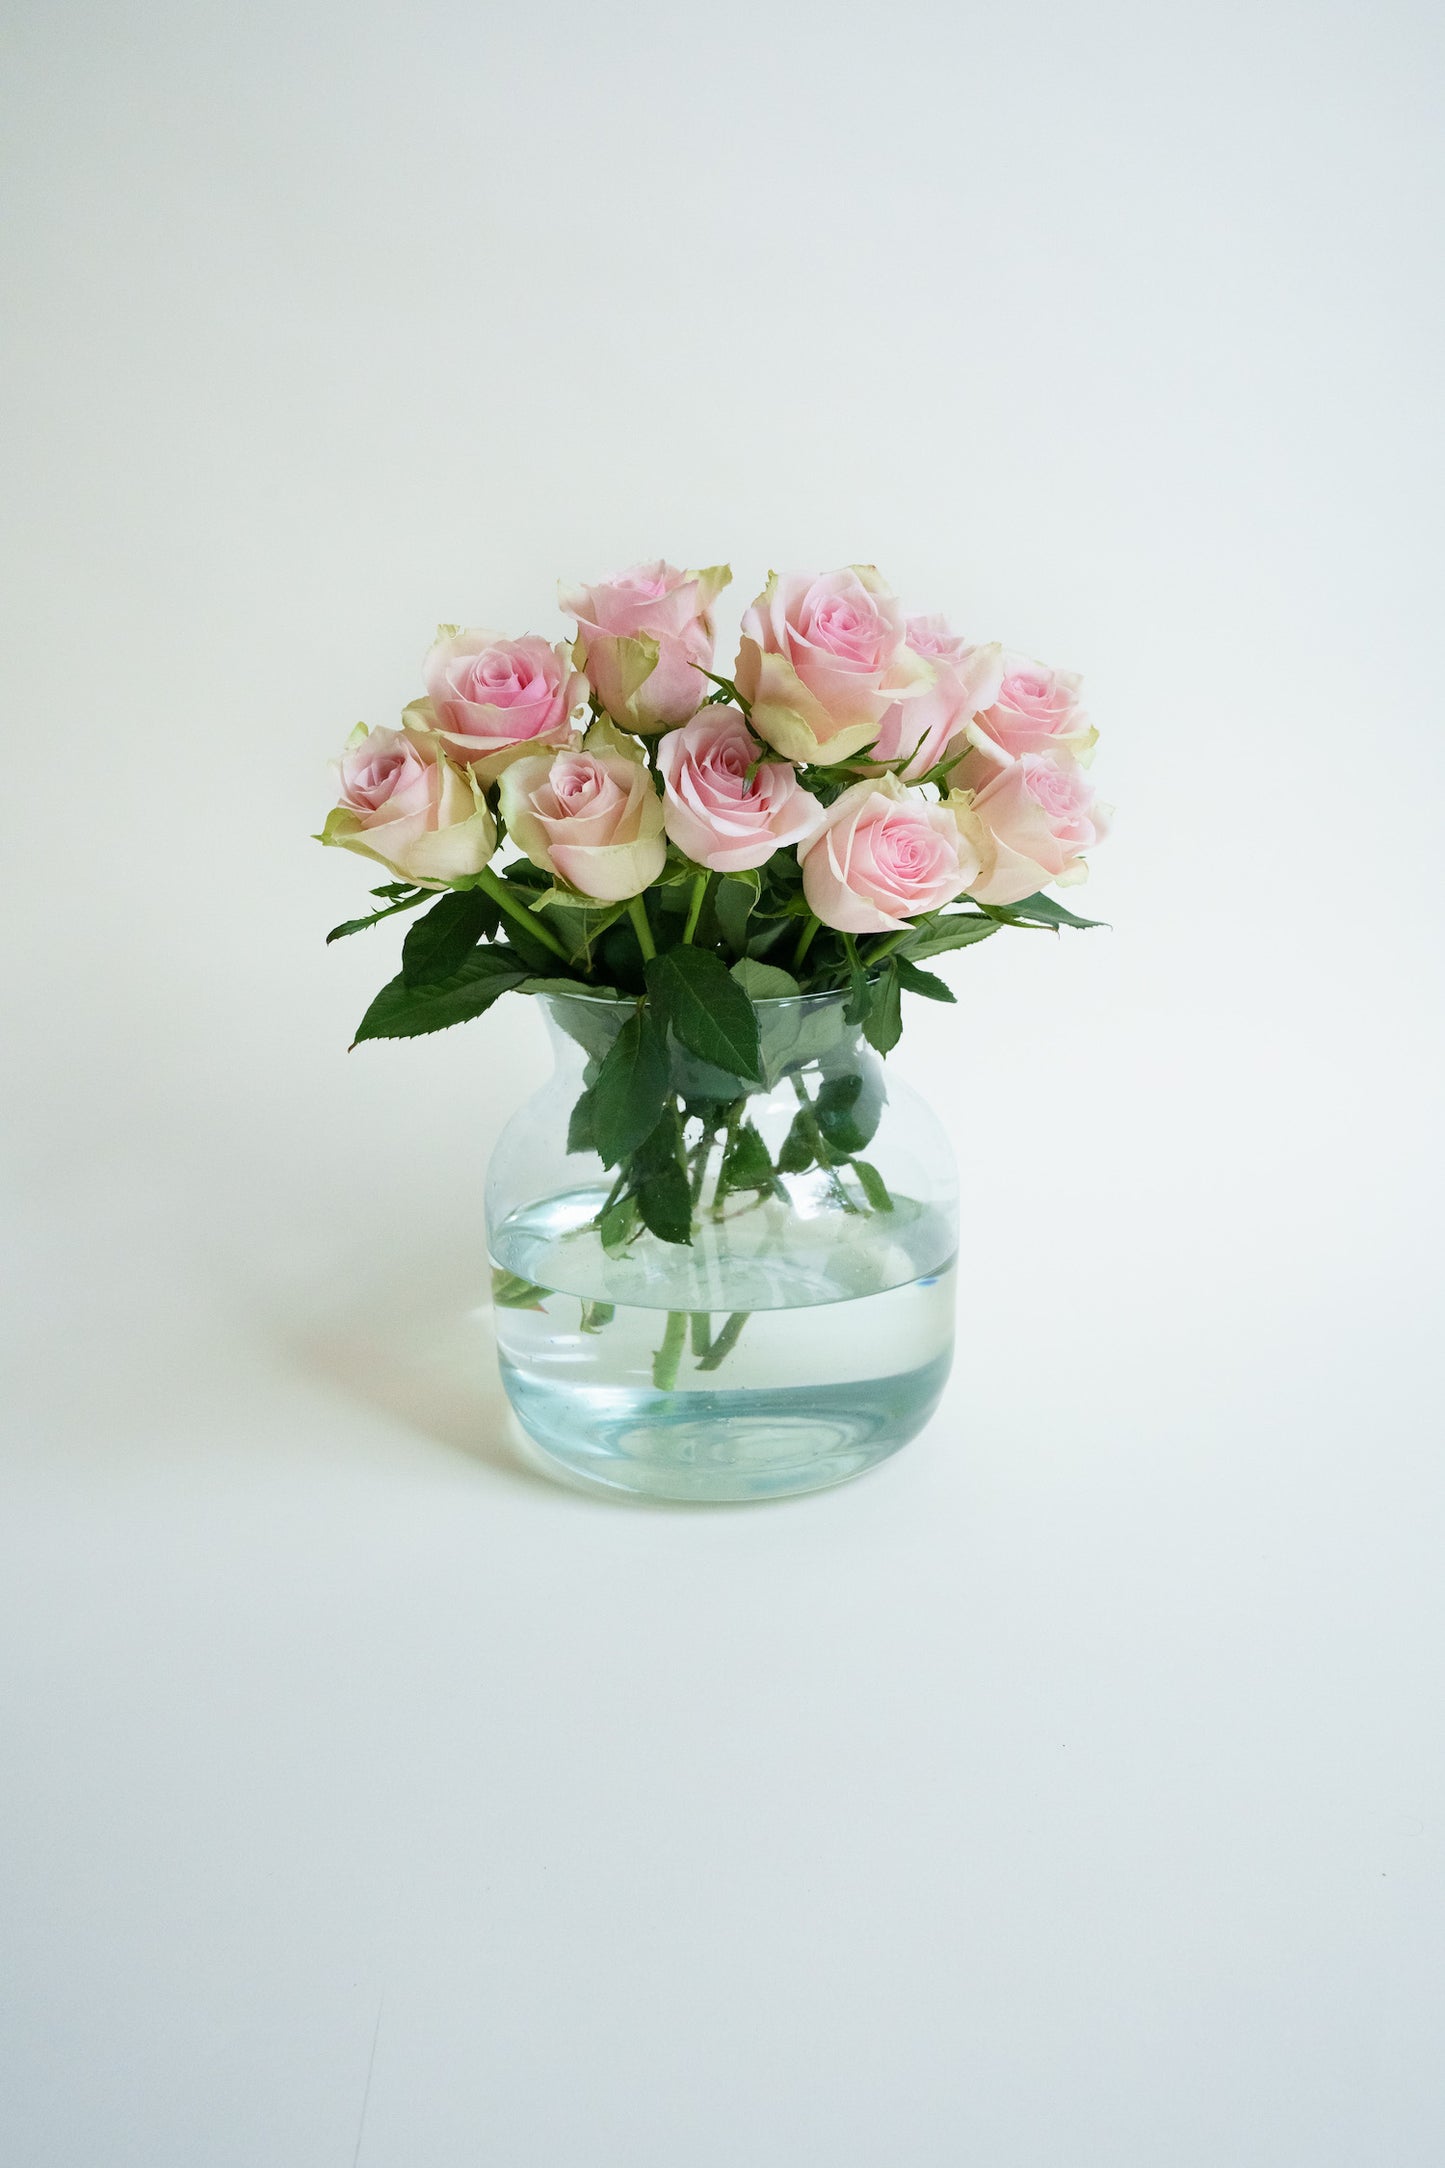 Roze roosjes door de brievenbus laten bezorgen? Wij bezorgen onze bloemen plukvers en razendsnel!